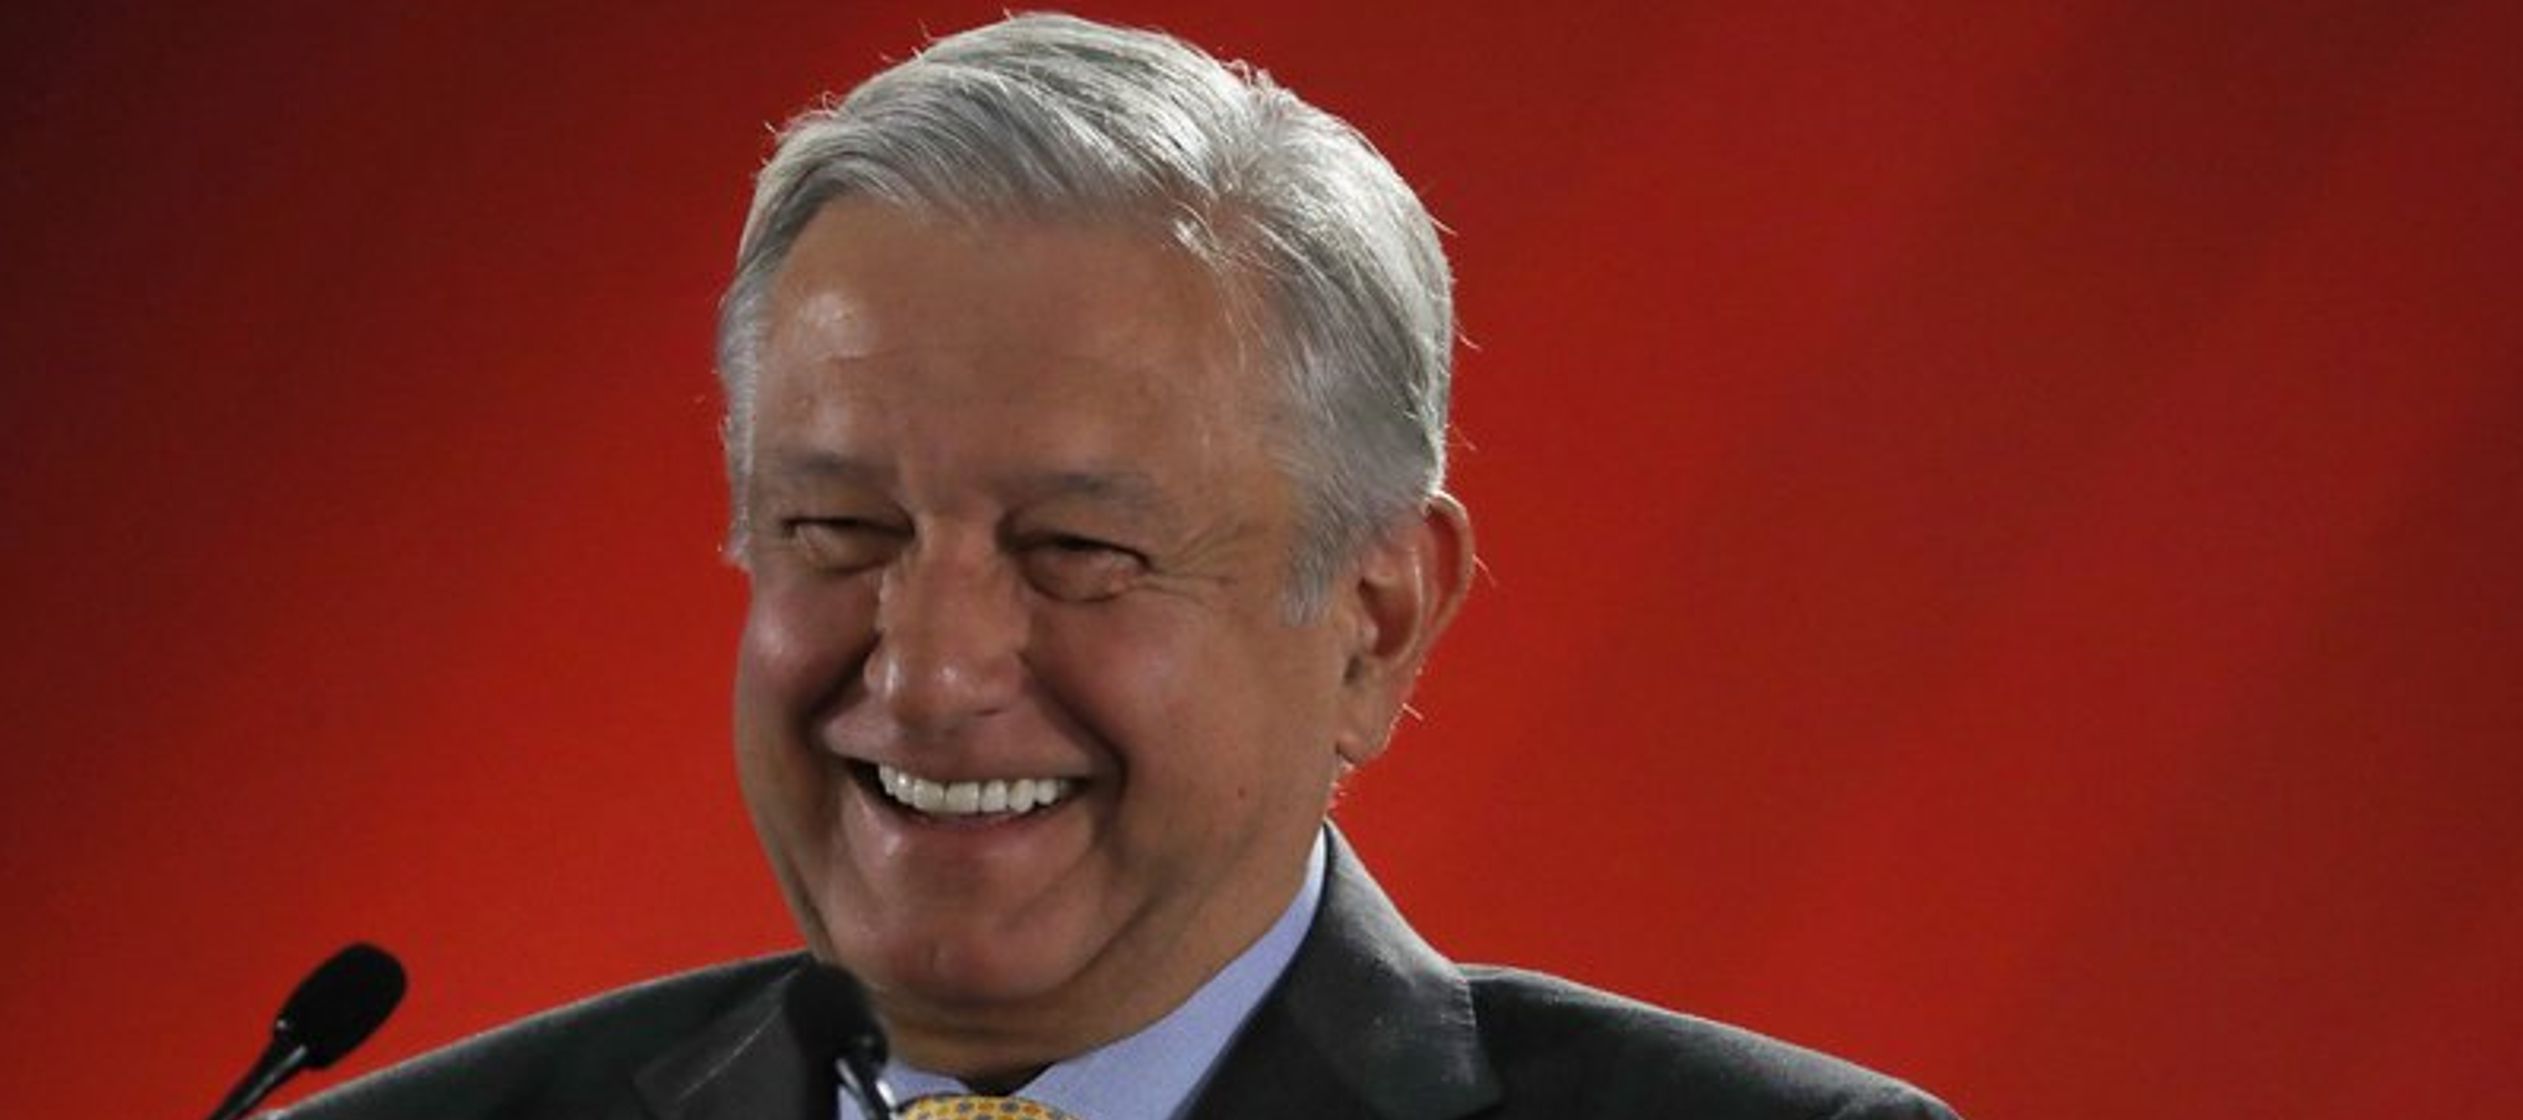 Cuando López Obrador tomó posesión el 1 de diciembre, muchos temían que...